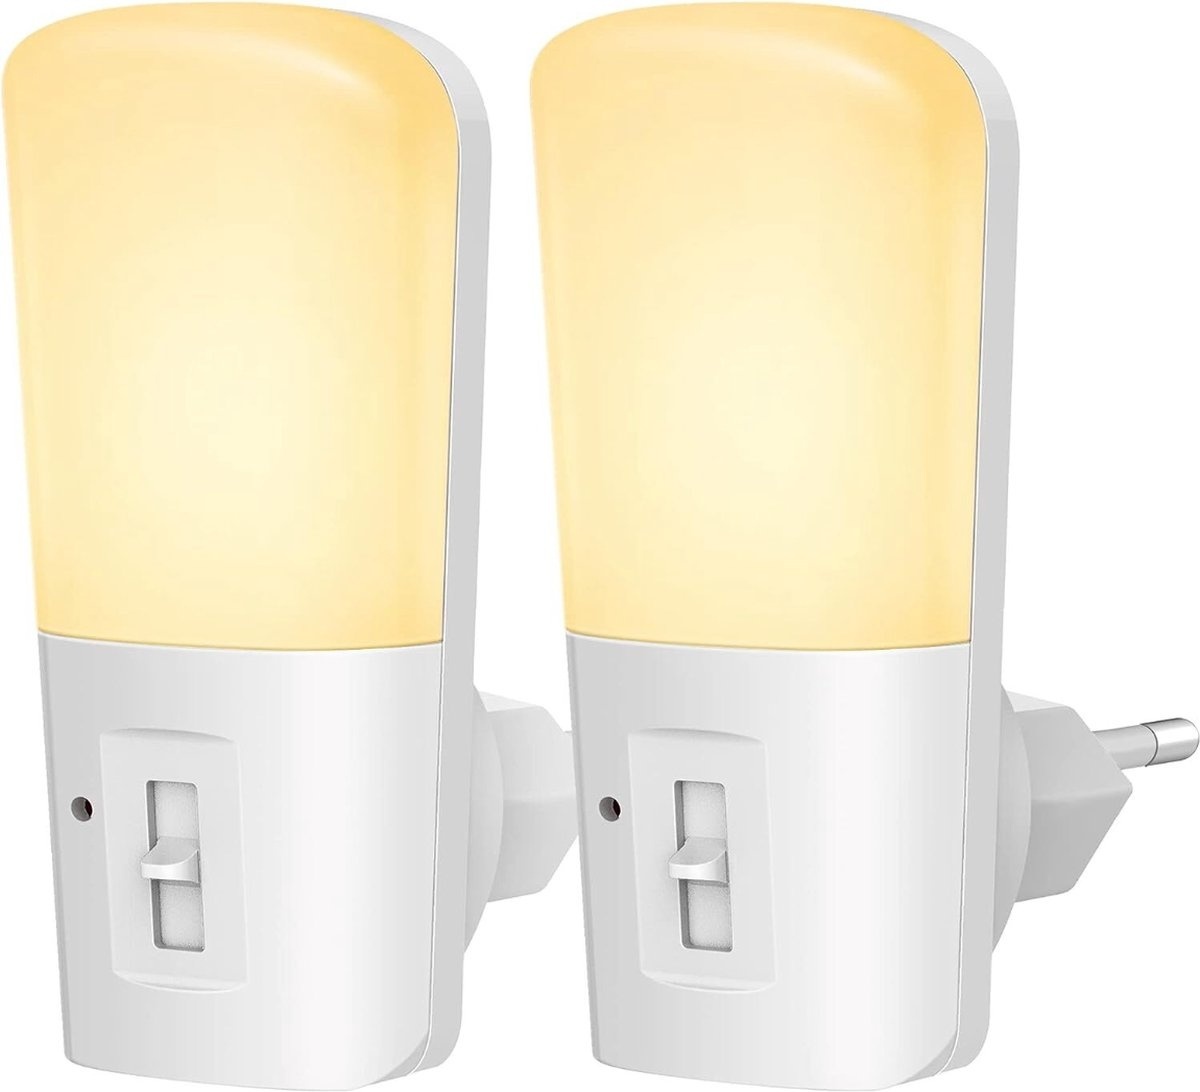 Sensor günstig Kaufen-Qumax LED Nachtlicht Sockel 2 Stück - Dimmbare Nachtlichter mit Sensor - Babyzimmer Nachtlicht - Tag und Nacht Sensor - Kinder & Baby - Weiß. Qumax LED Nachtlicht Sockel 2 Stück - Dimmbare Nachtlichter mit Sensor - Babyzimmer Nachtlicht